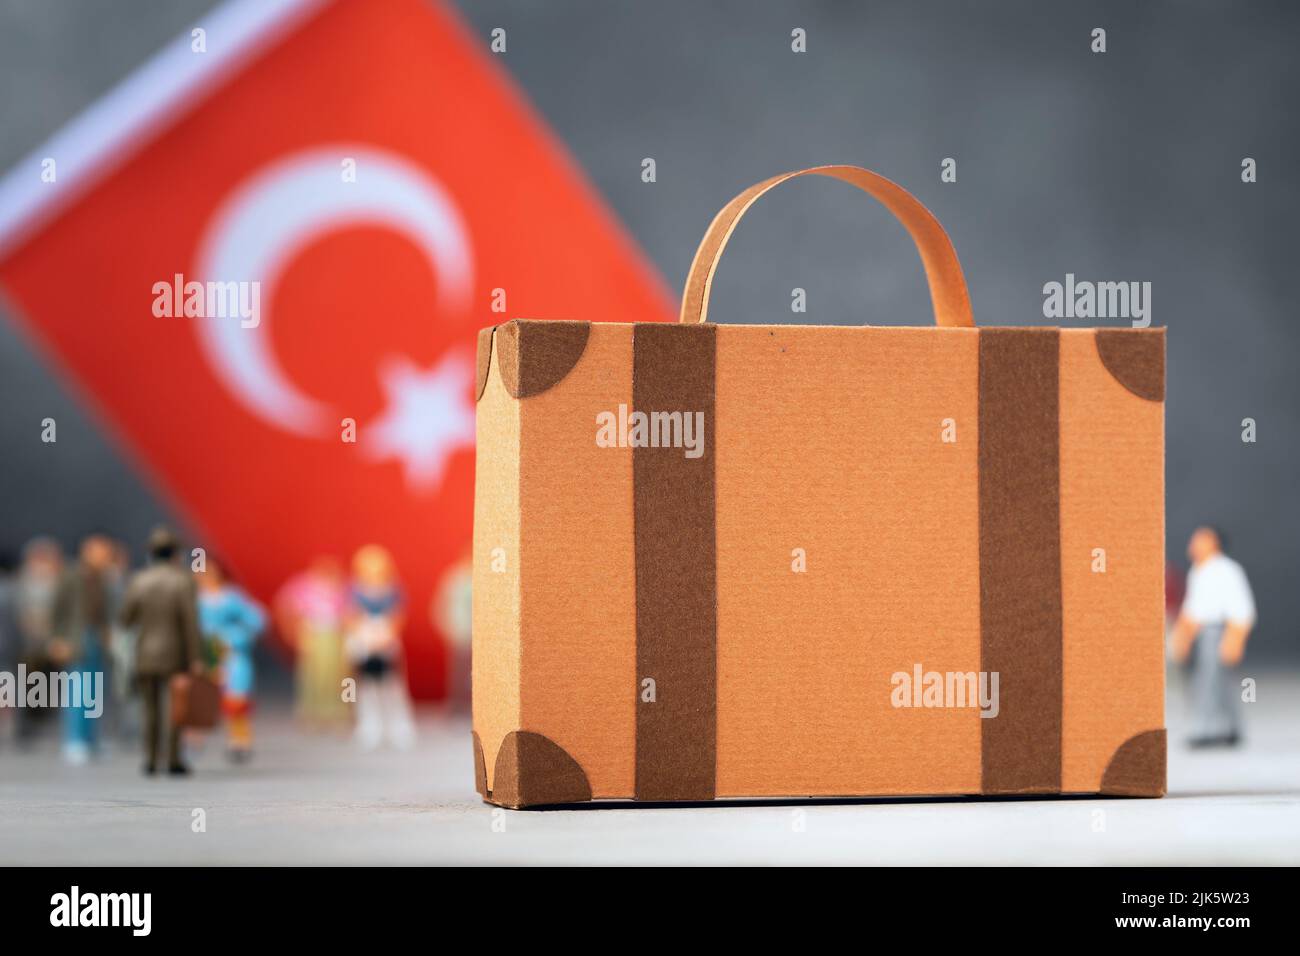 Maleta de cartón, gente de juguete de plástico y una bandera sobre un fondo abstracto, un concepto sobre el tema del traslado o la migración a Turquía Foto de stock